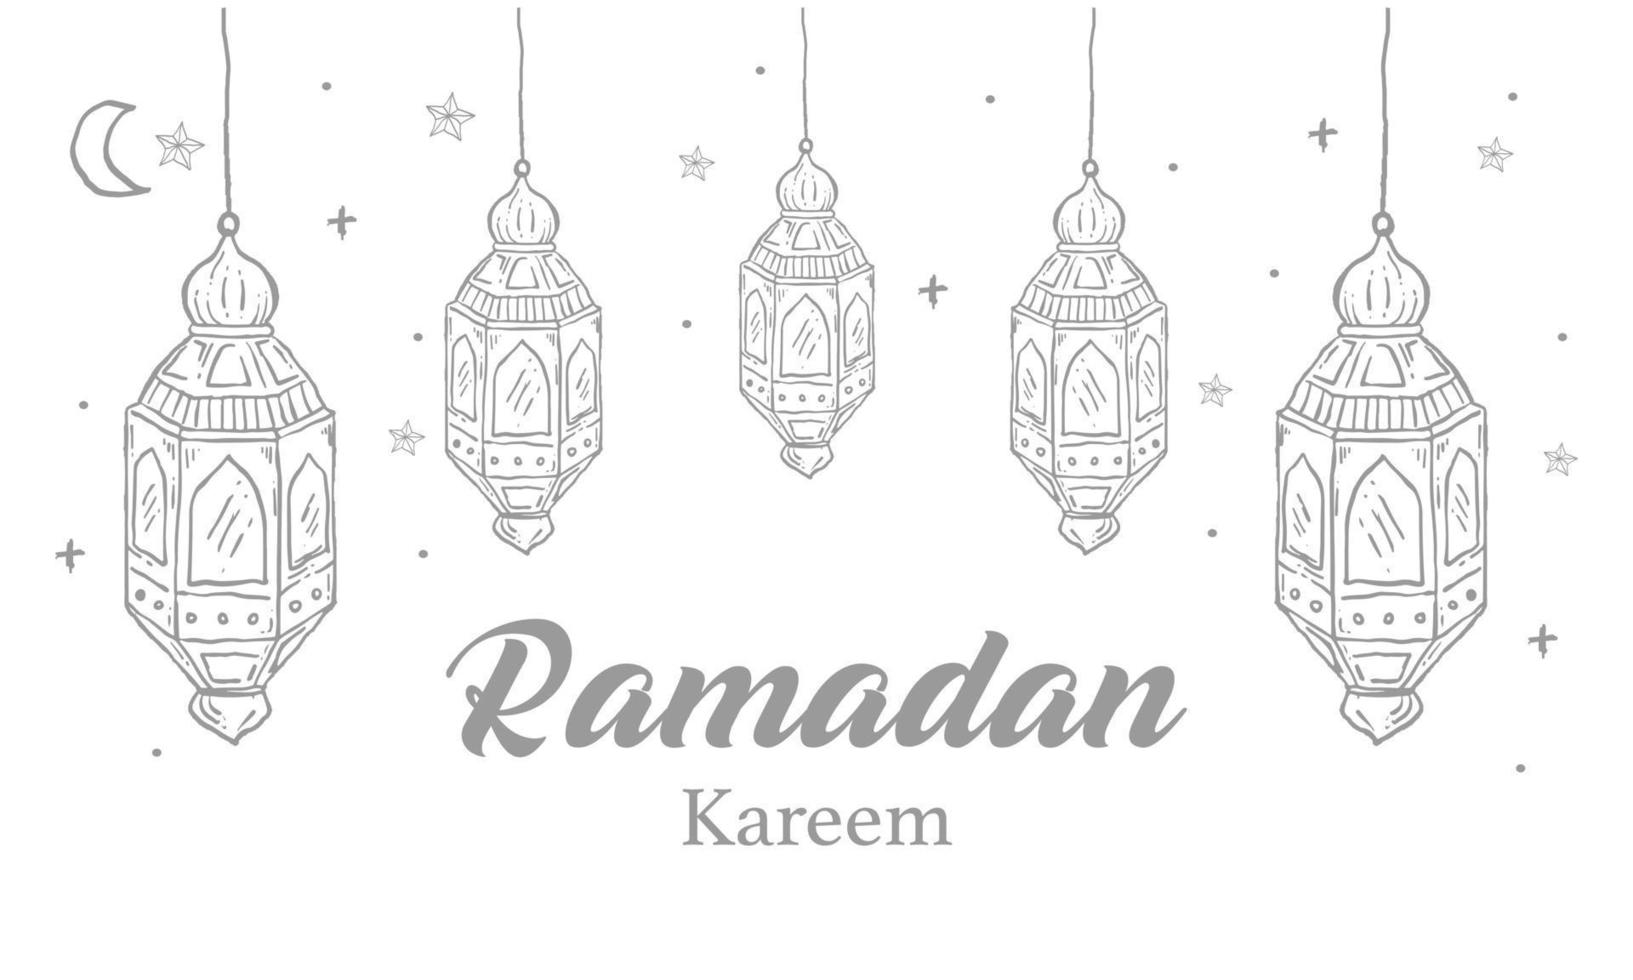 cartão de ramadan kareem com ornamento islâmico de uma linha. ilustração em vetor vintage mão desenhada isolada no fundo branco.